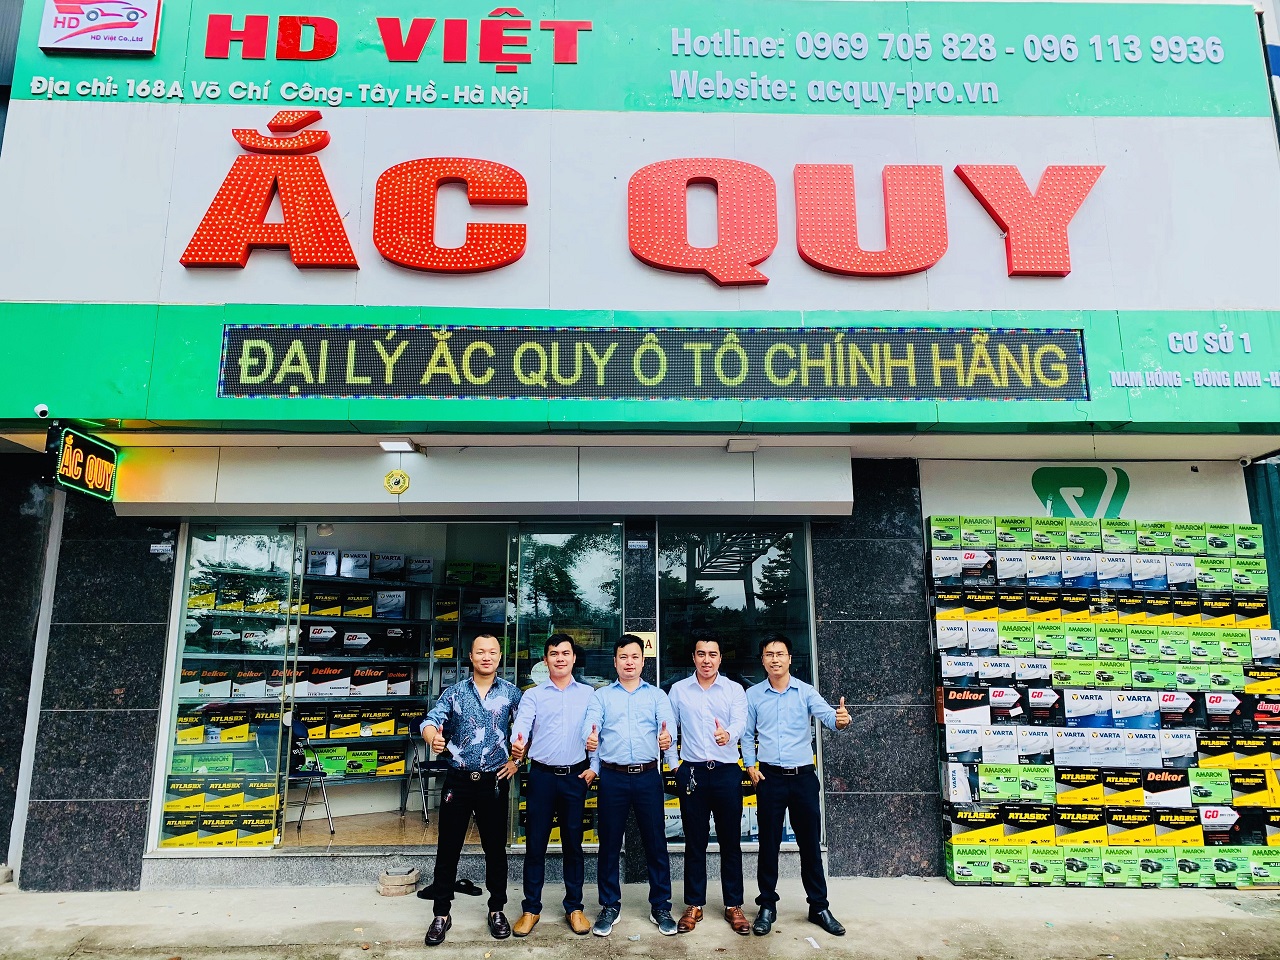 Ảnh cơ sở ắc quy HD Việt